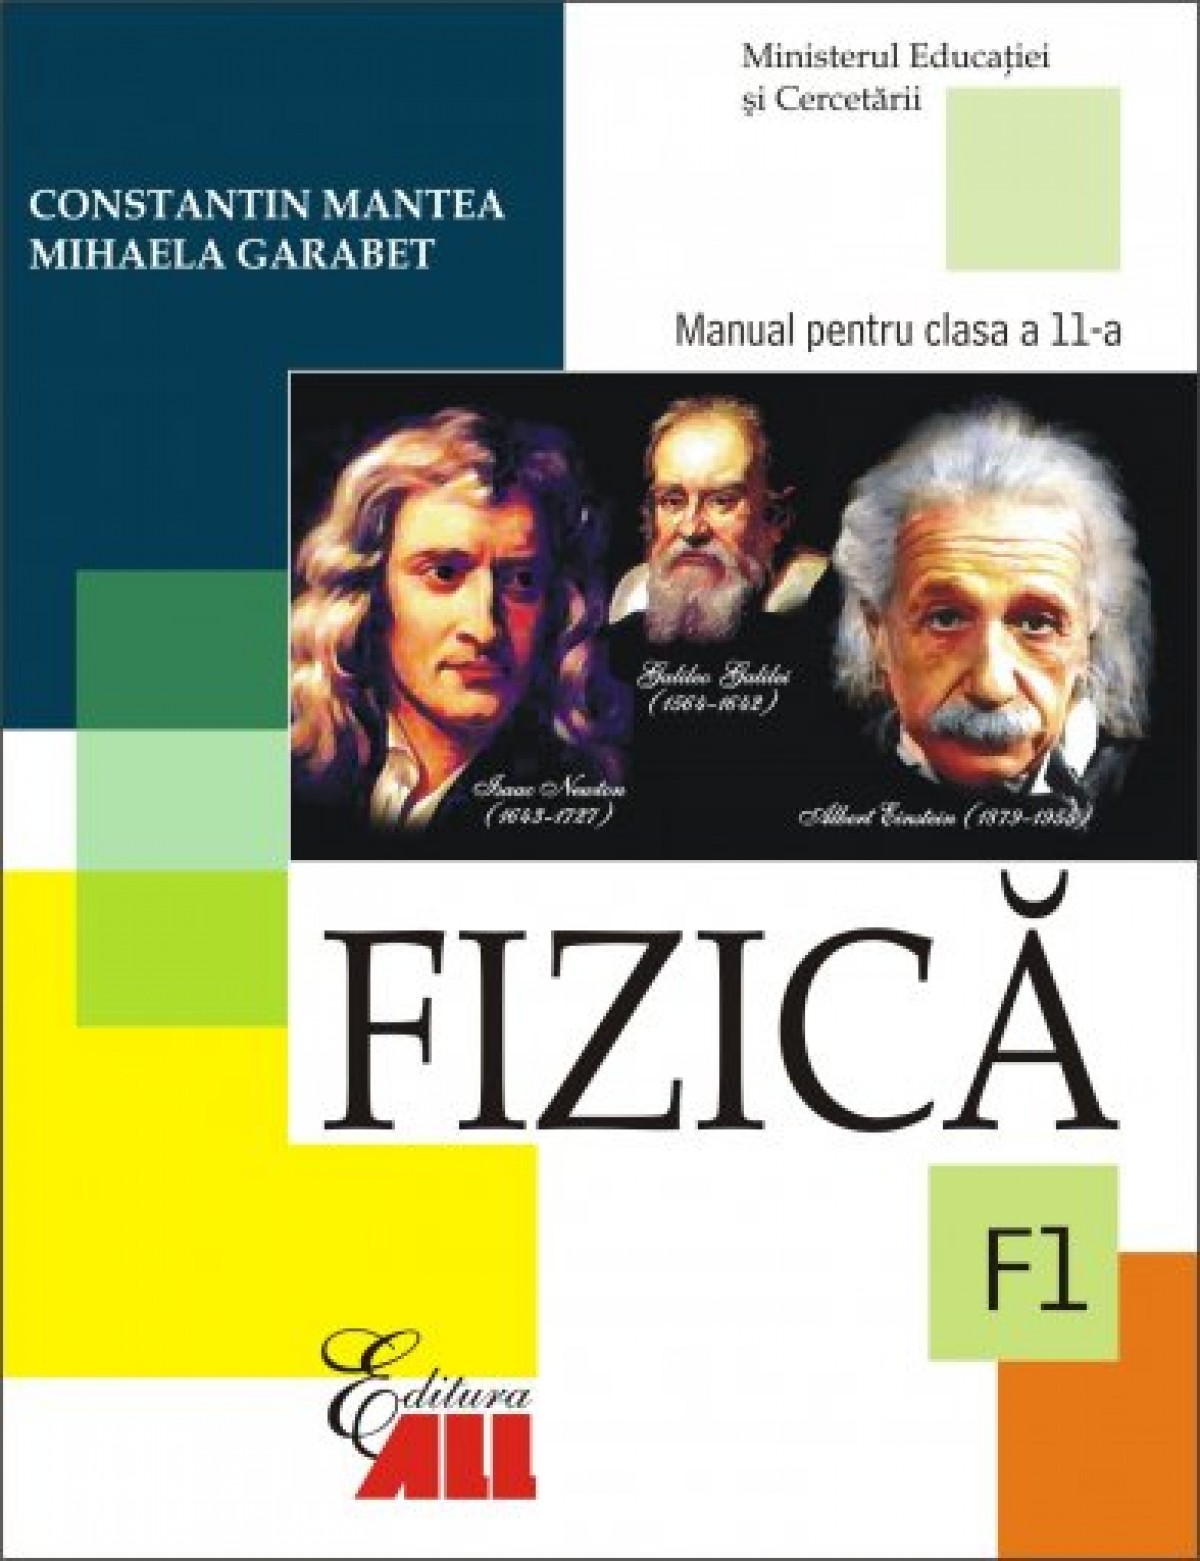 Fizica (F1). Manual pentru clasa a XI-a